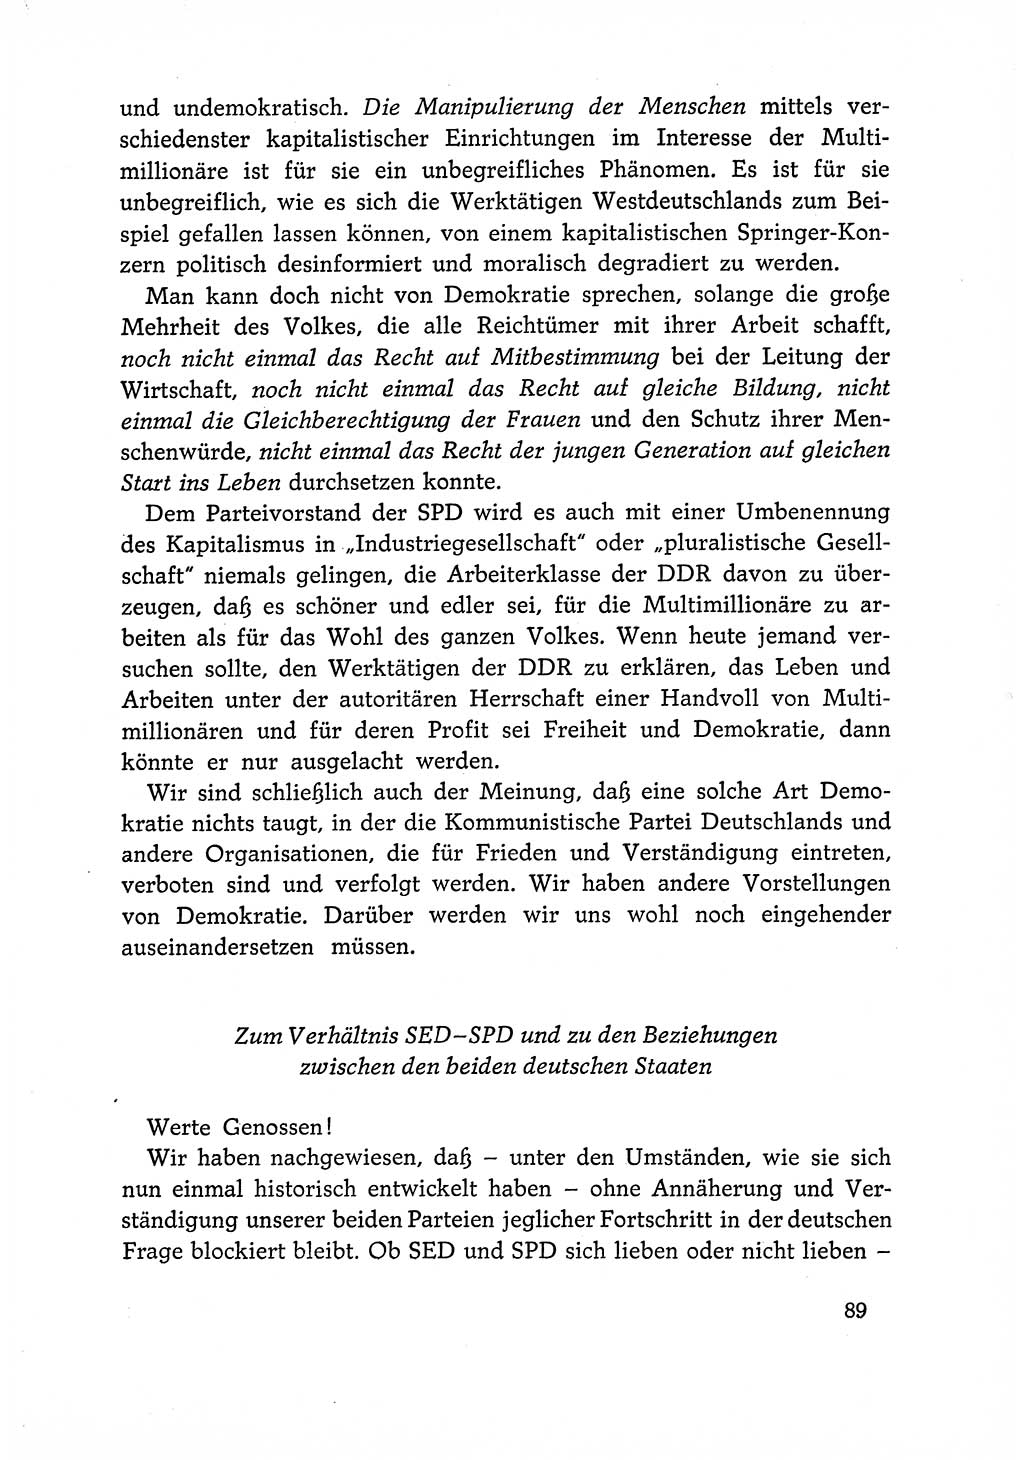 Dokumente der Sozialistischen Einheitspartei Deutschlands (SED) [Deutsche Demokratische Republik (DDR)] 1966-1967, Seite 89 (Dok. SED DDR 1966-1967, S. 89)